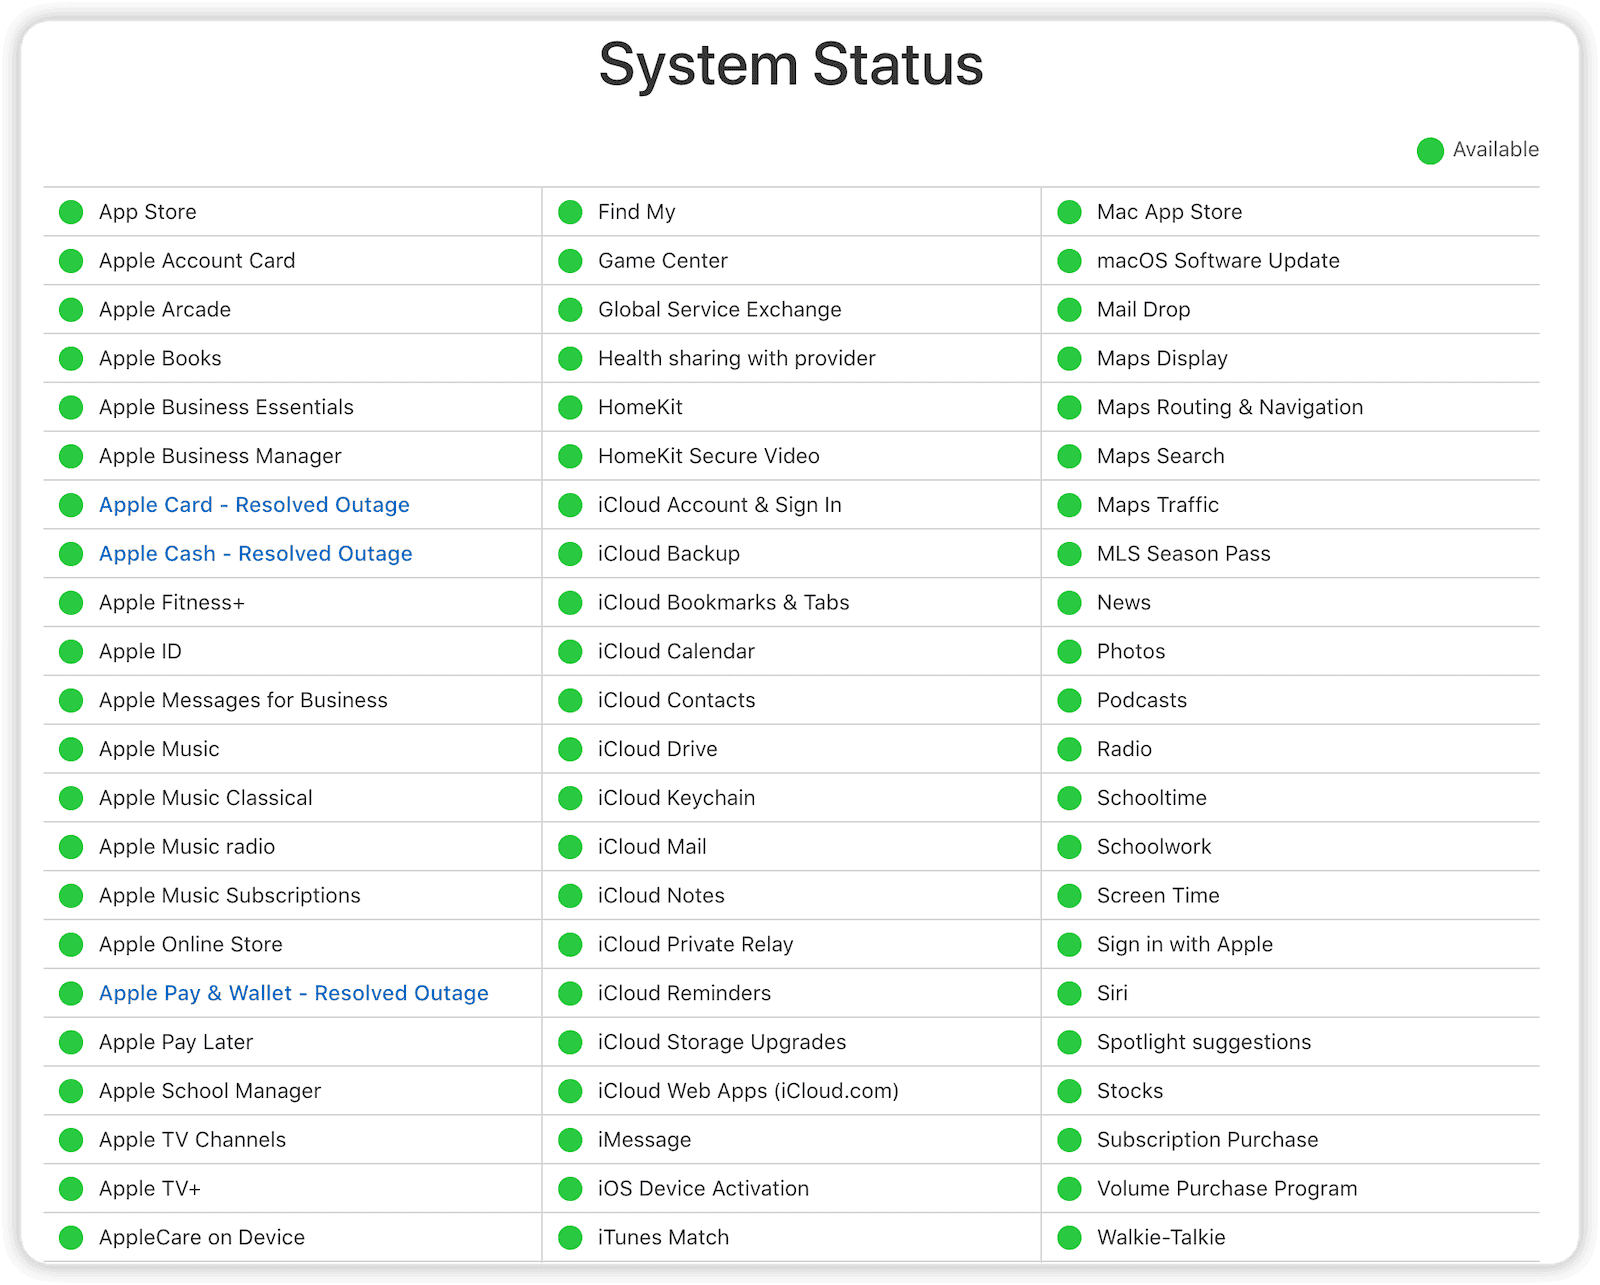 Verify App Store Server Status